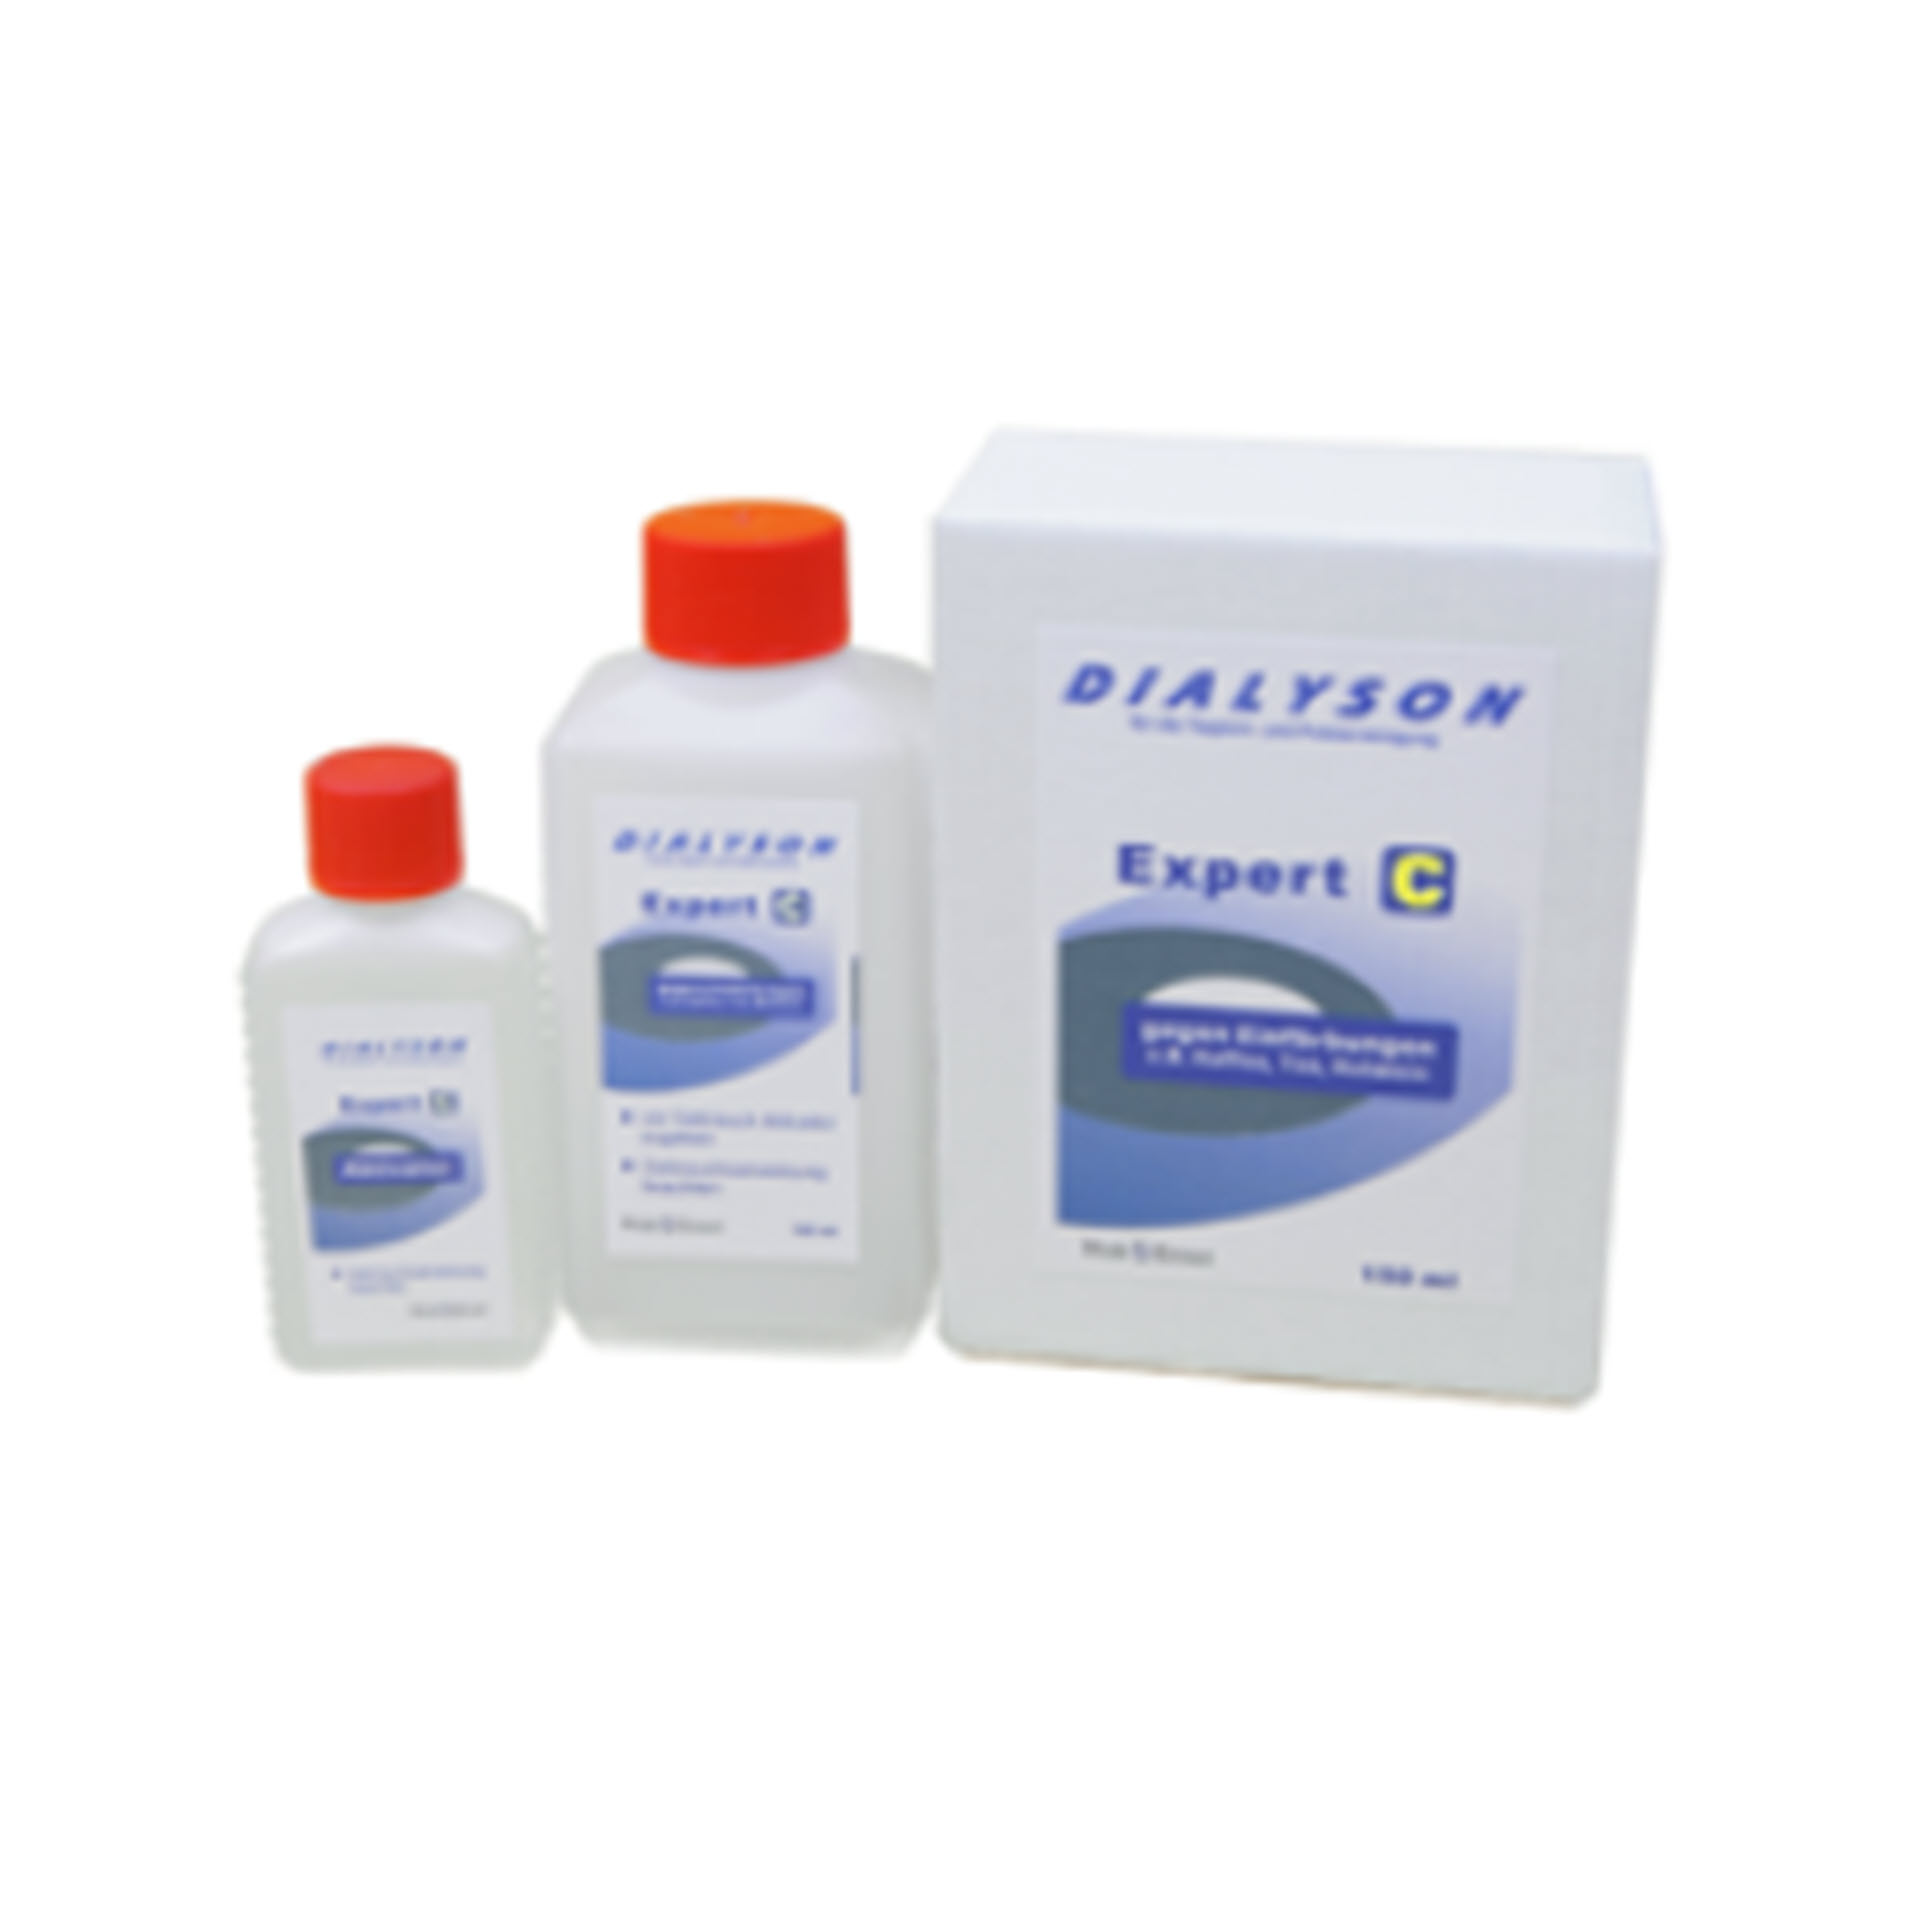 Dialyson Expert C - Fleckentferner - 100 ml und 50 ml Aktivator = 150 ml Speziallösung